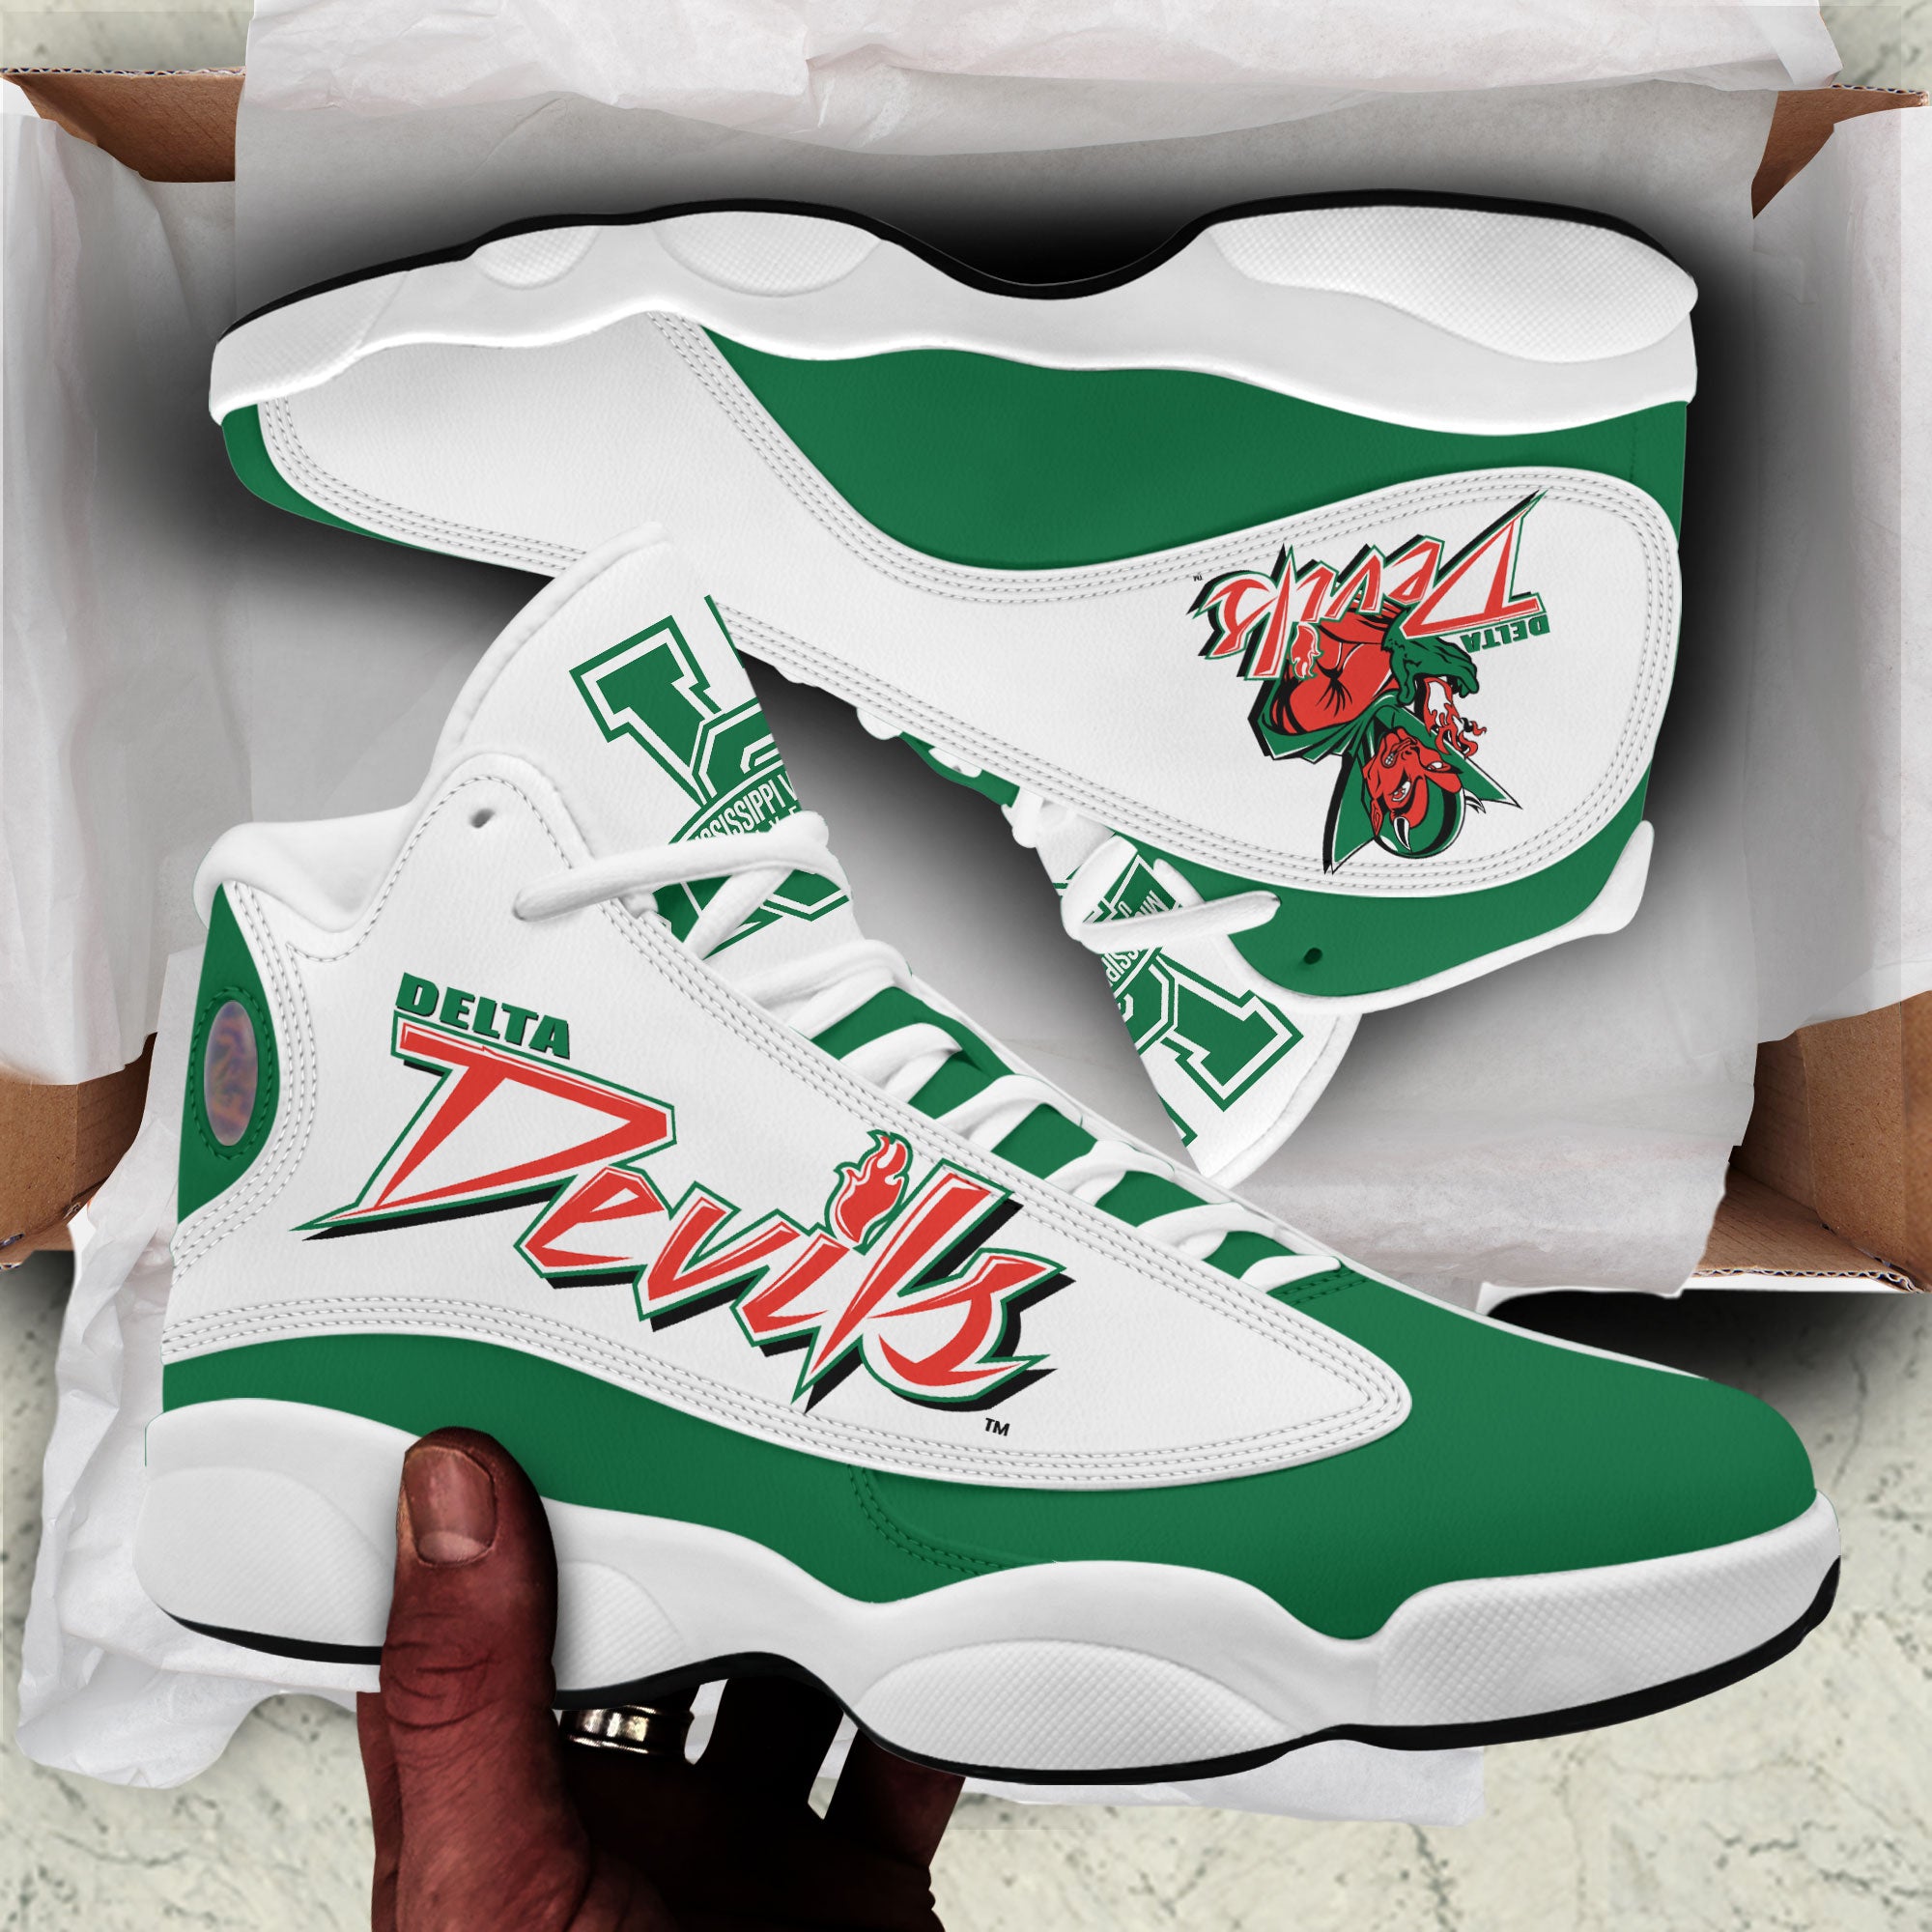 Mvsu Delta Devils Sneakers v344